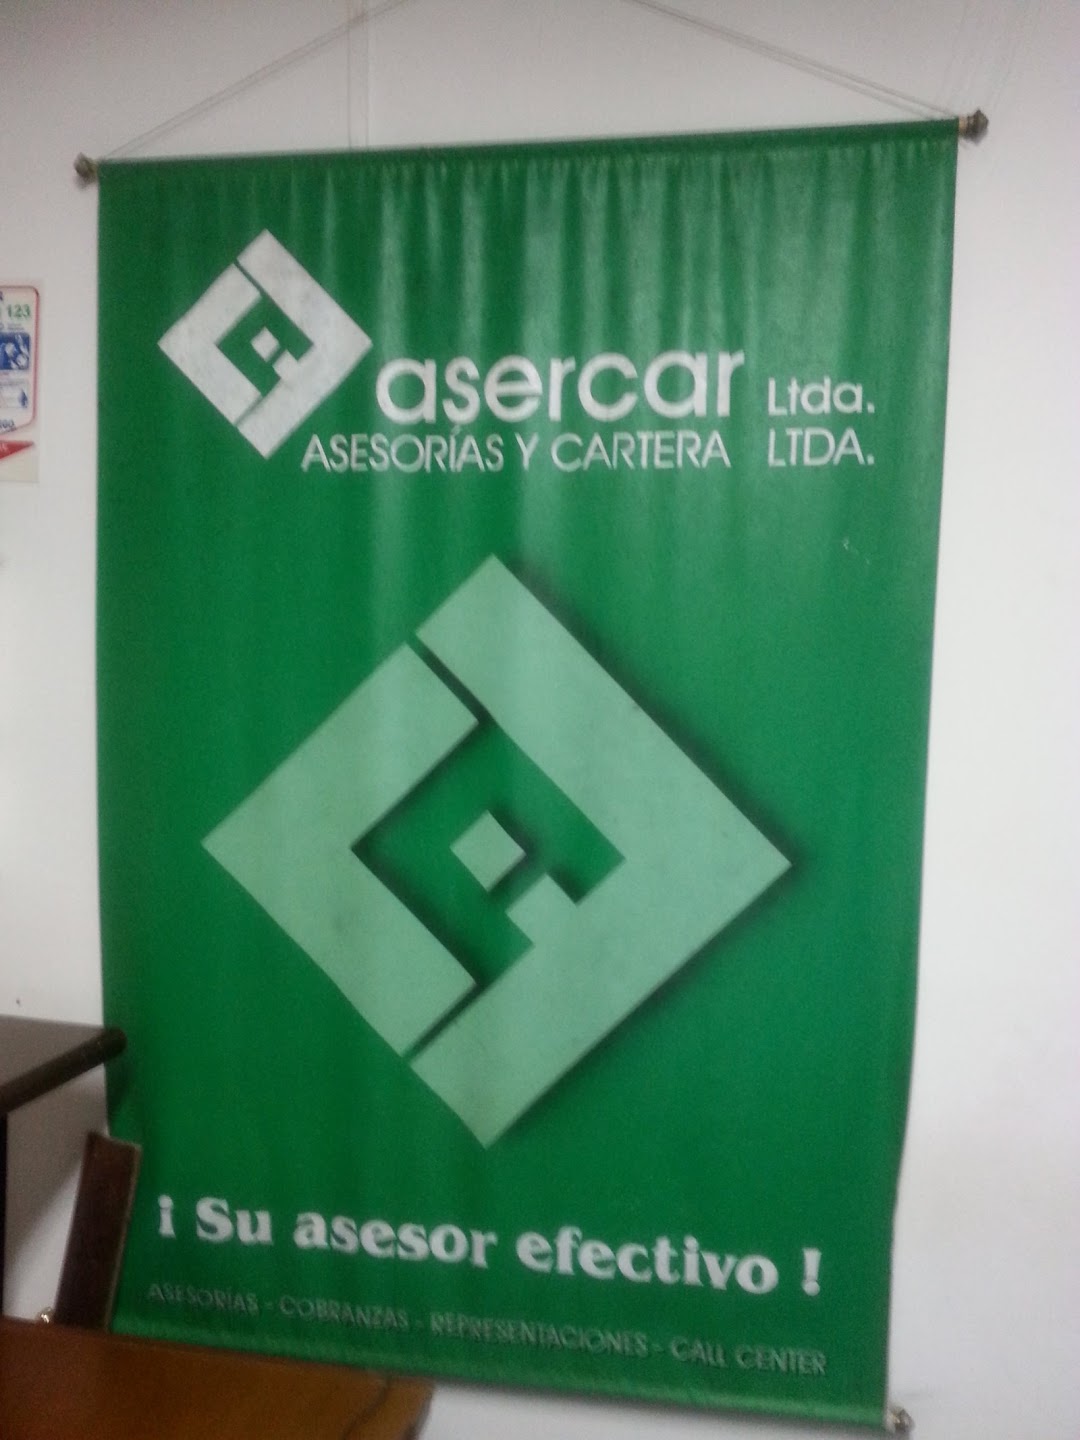 Asercar Ltda